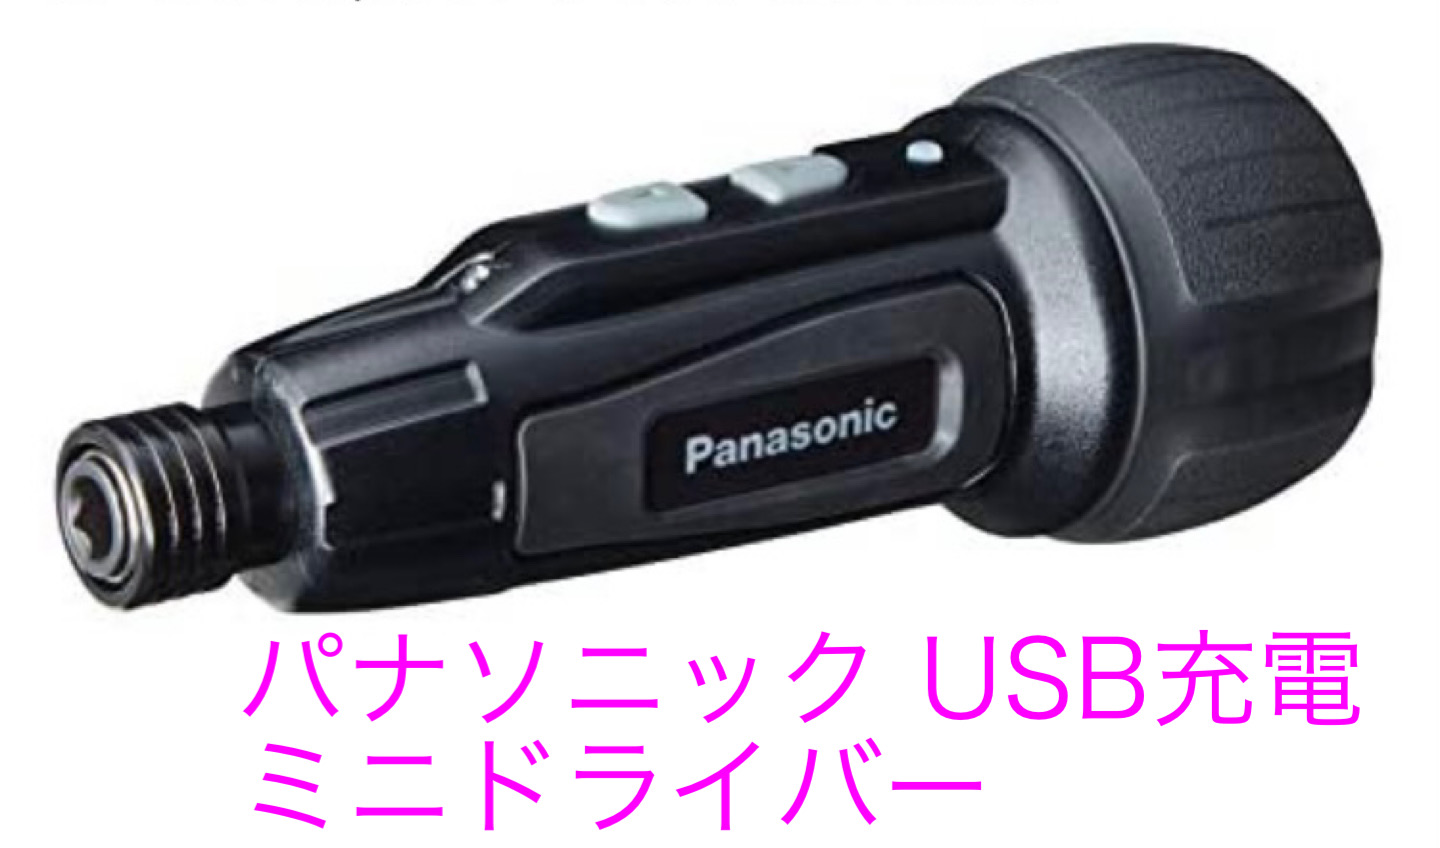 パナソニック USB充電ミニドライバーEZ7412(3.7V)